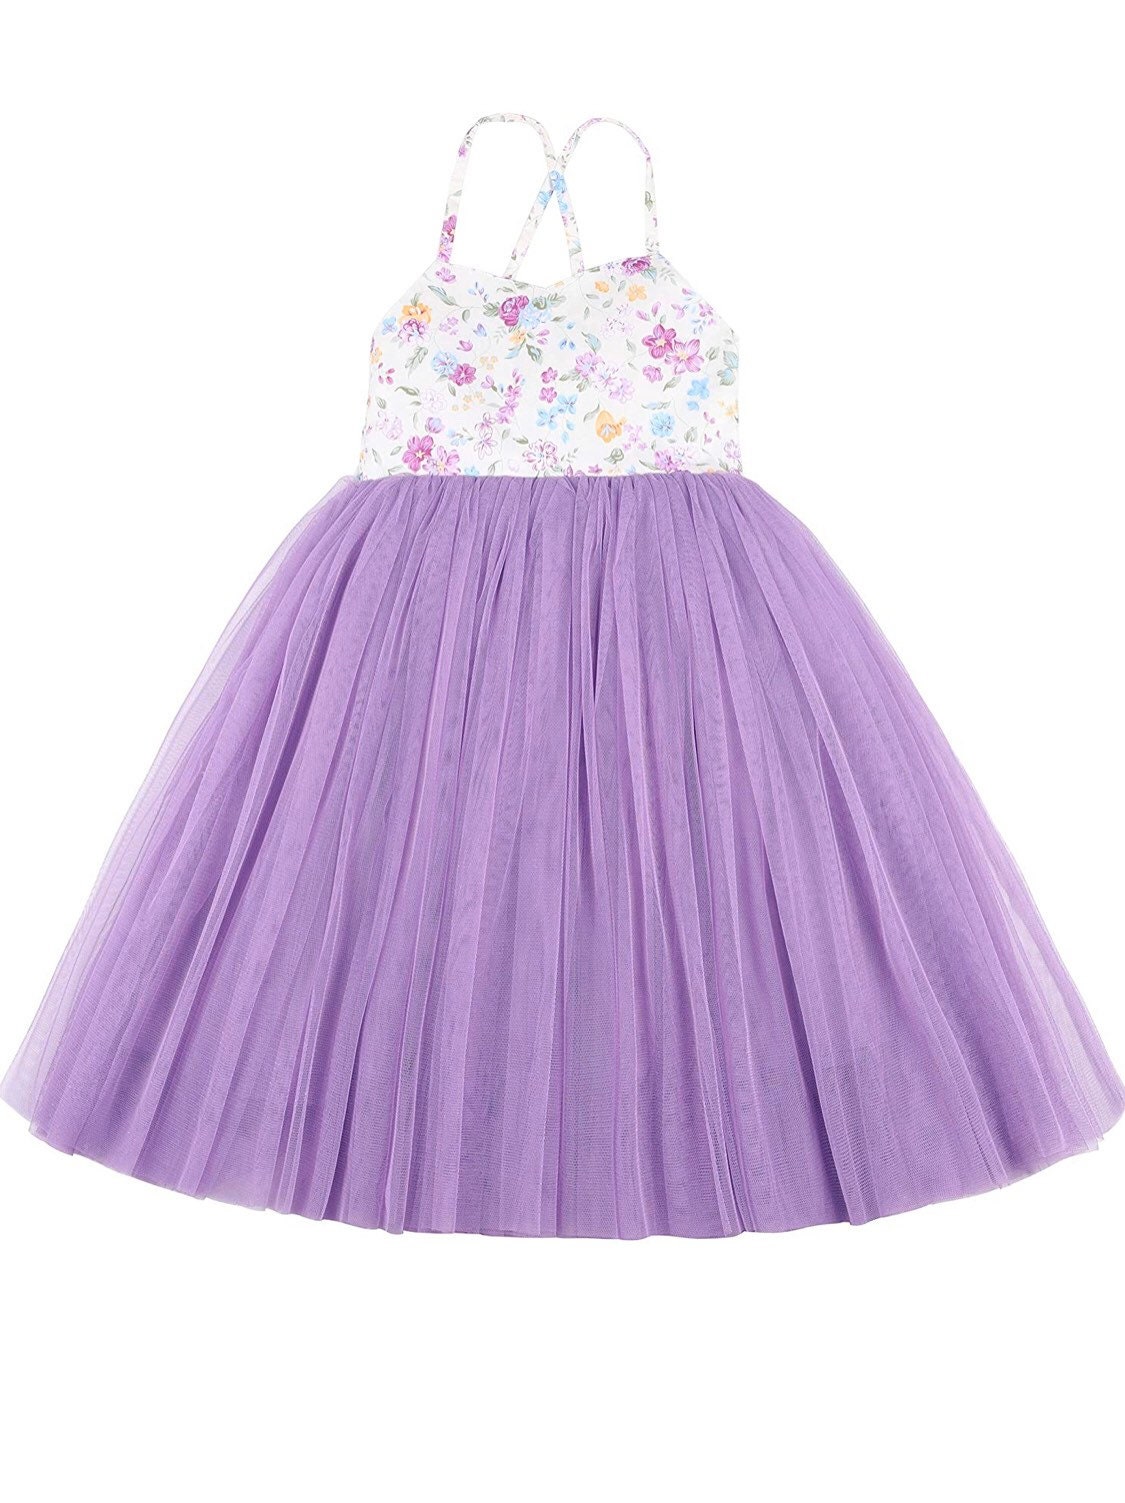 Purple dress for girls little girls clothing little girls | Etsy